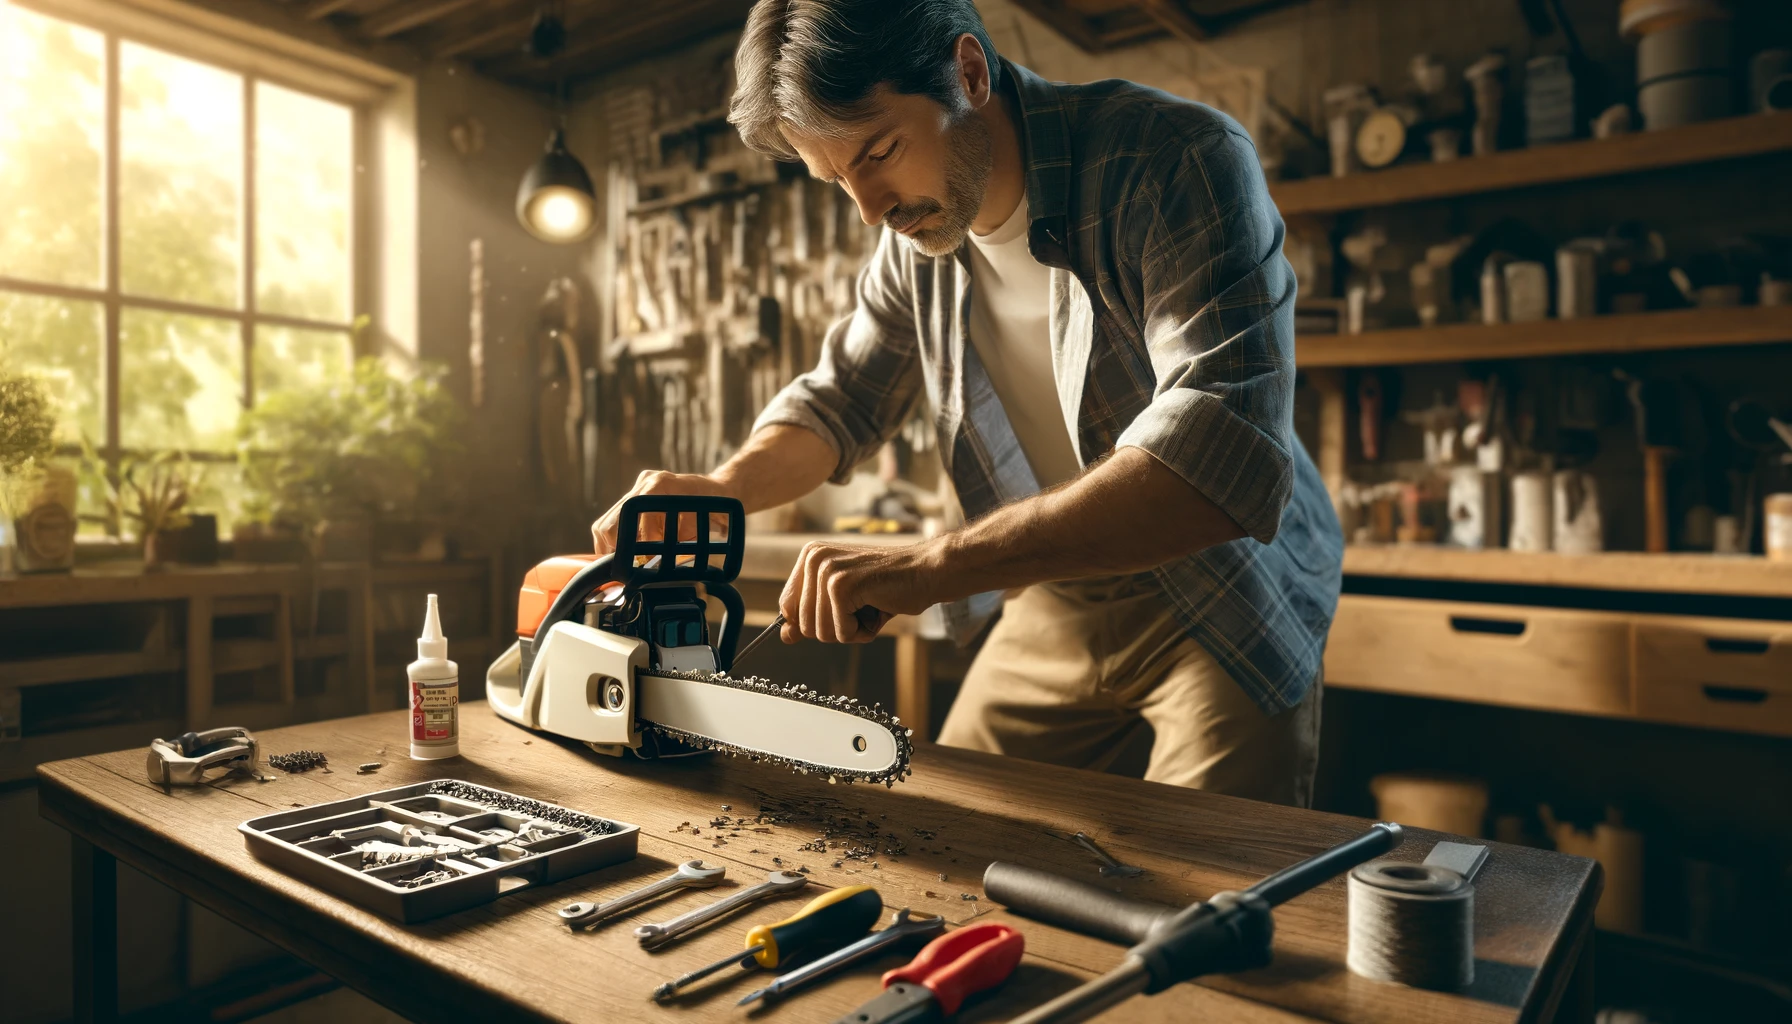 Un homme en train de changer la chaine de sa tronçonneuse électrique dans son atelier